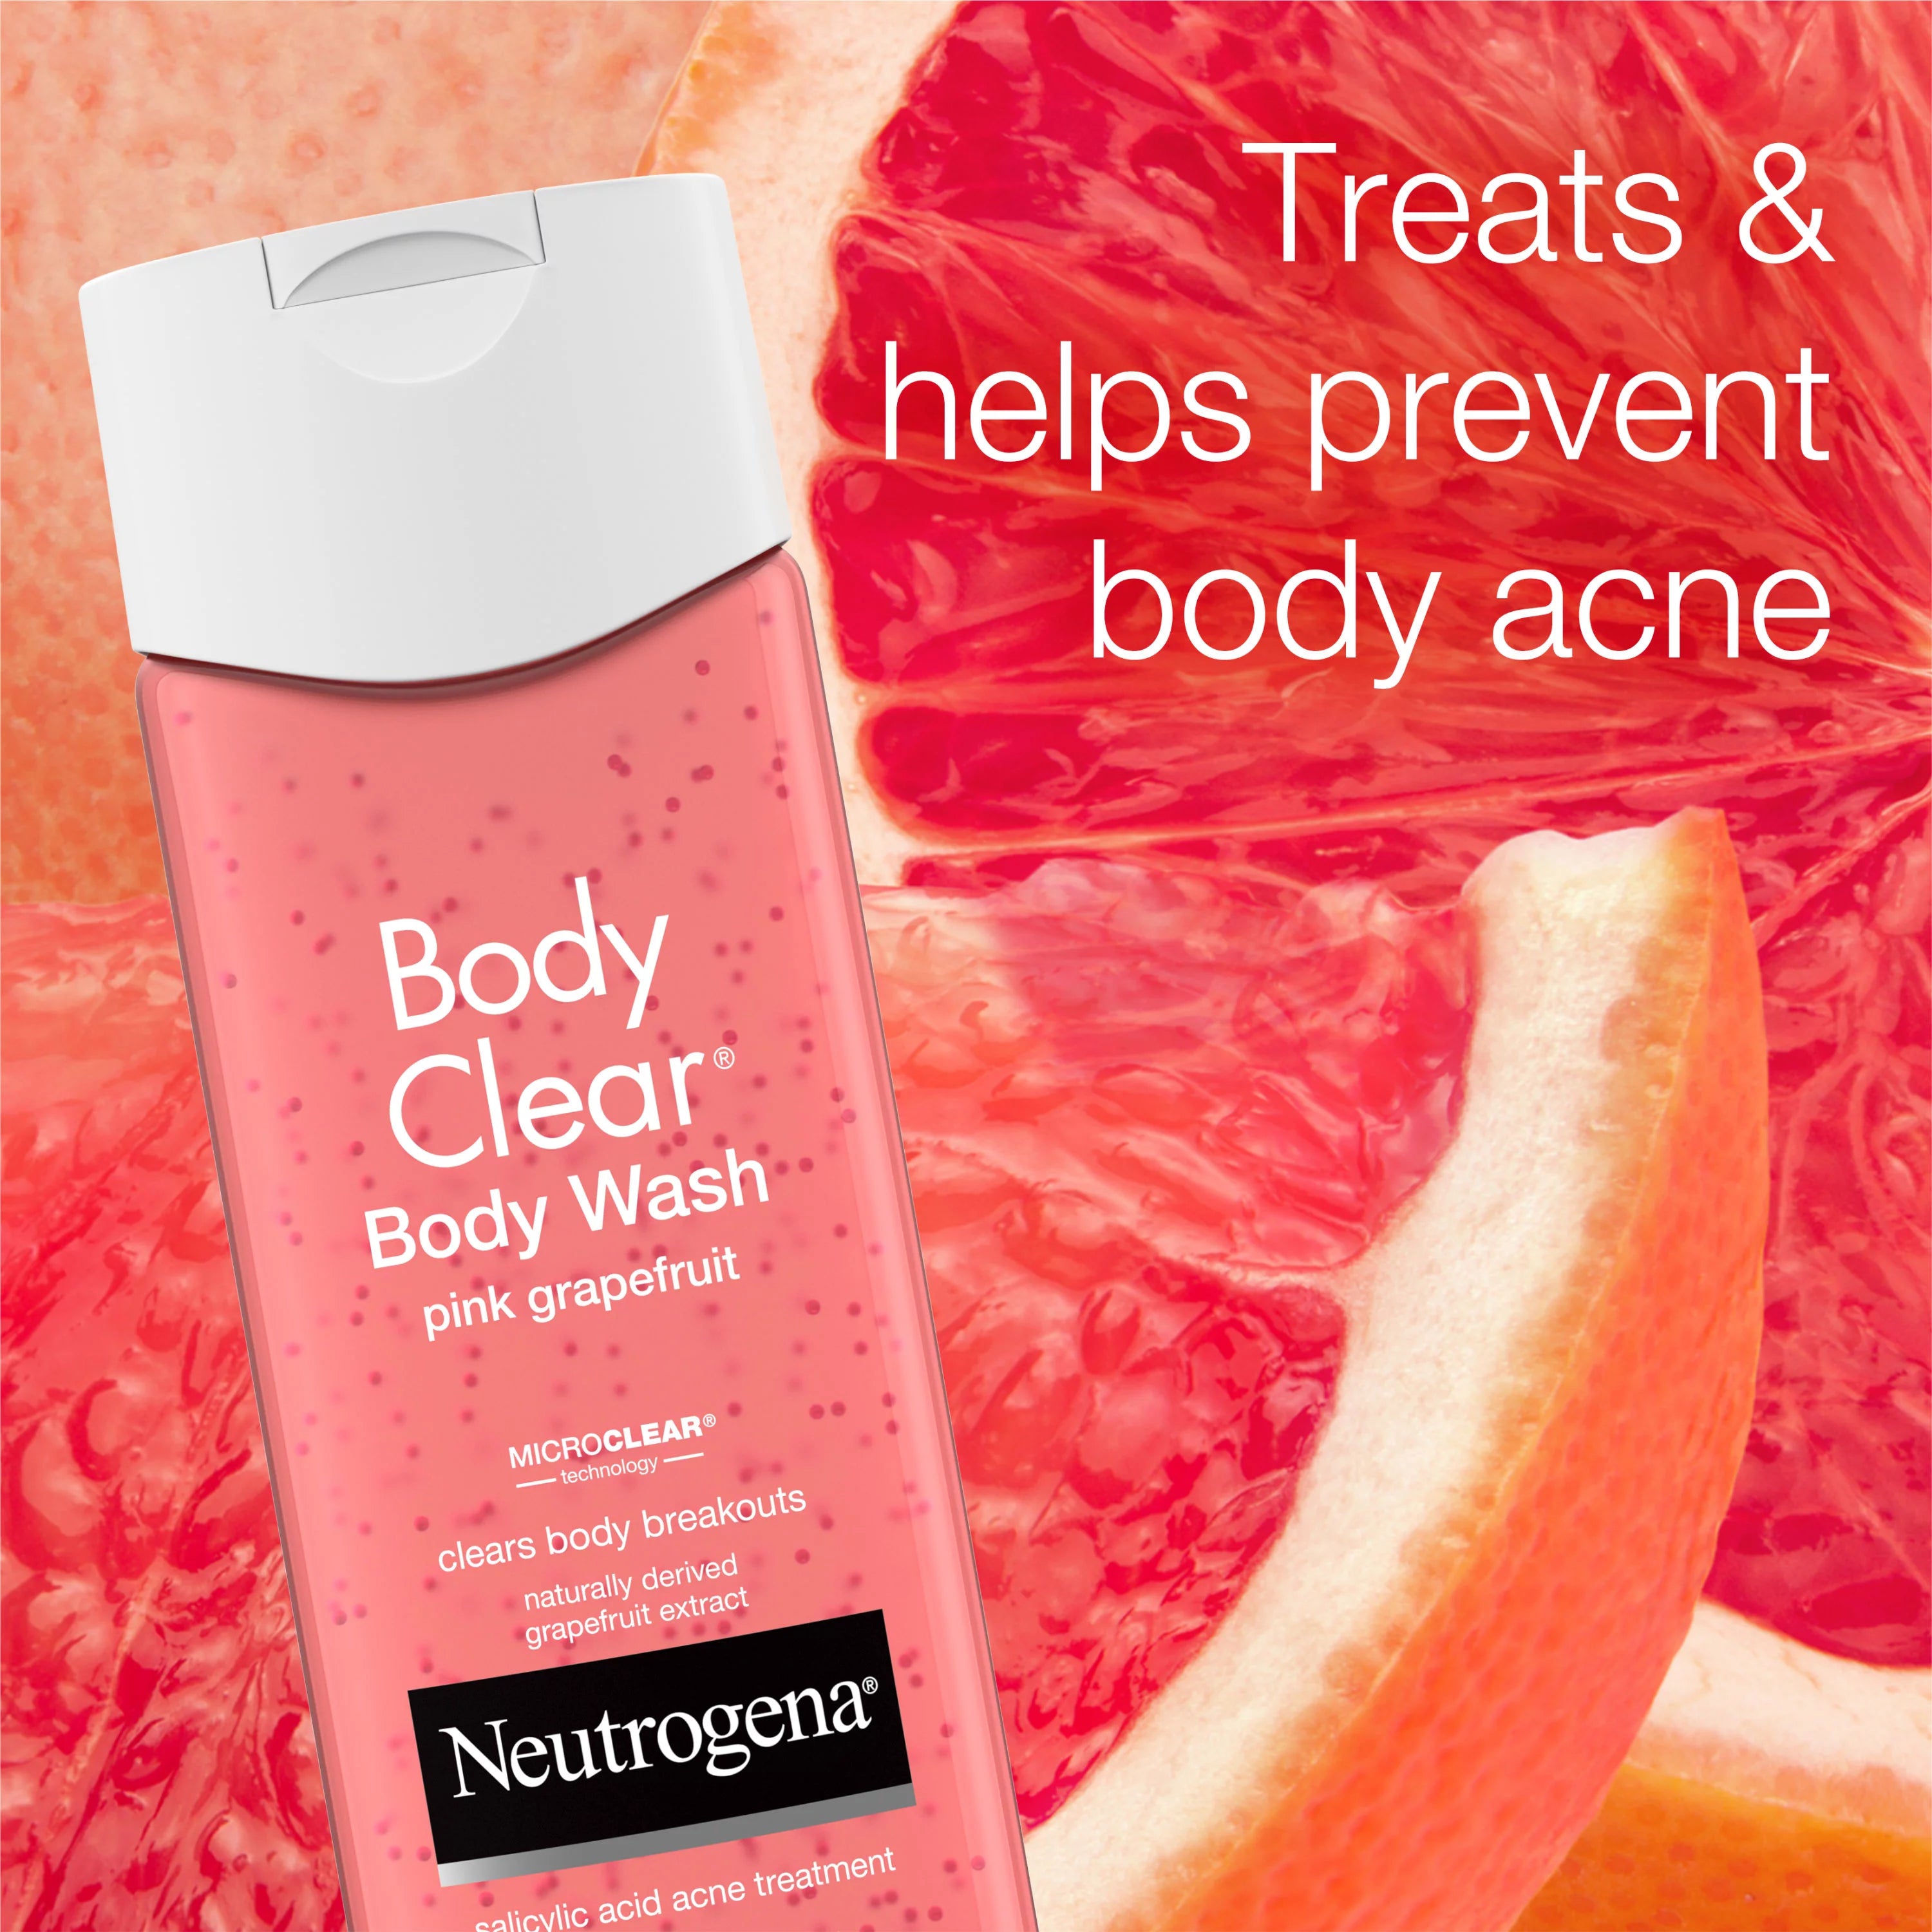 NEUTROGENA Body Clear Body Wash Pink Grapefruit